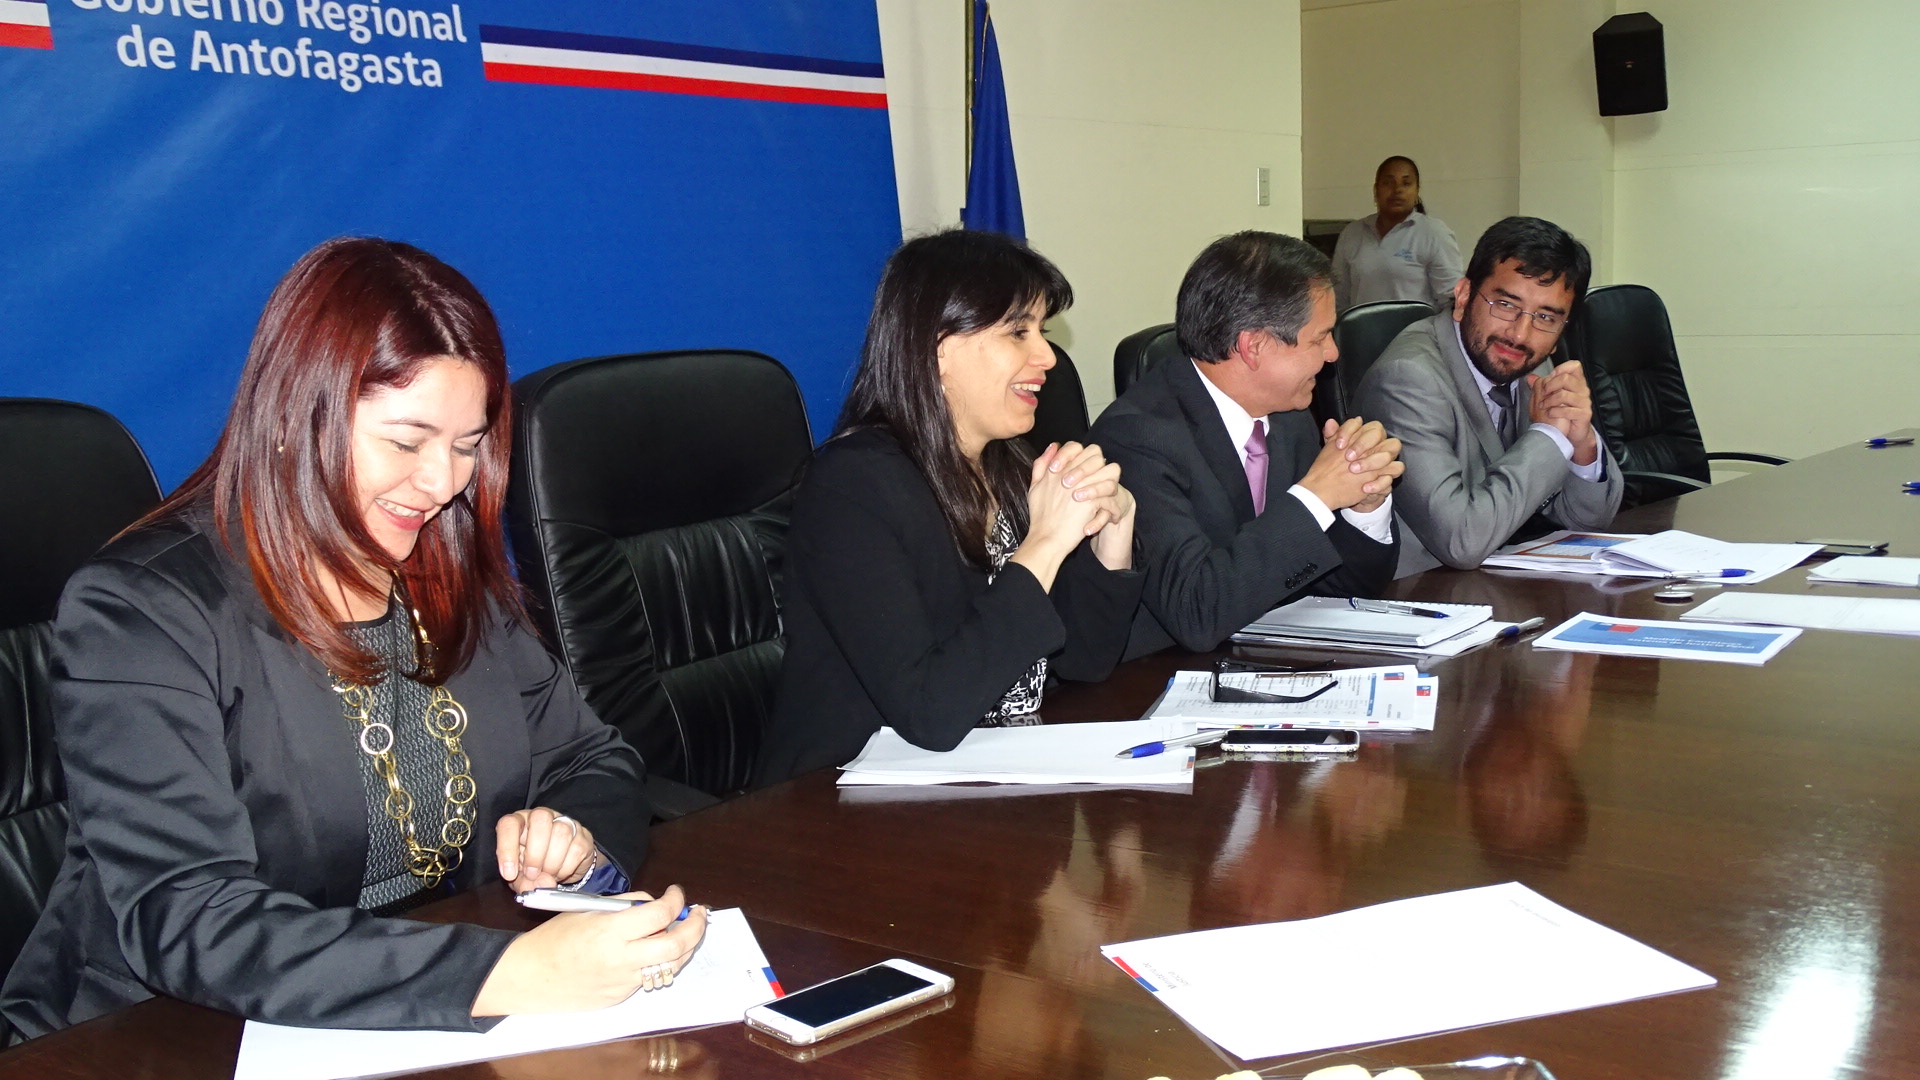 La Defensora Regional junto a la Ministra Blanco, el Intendente, Valentin Volta, y el seremi, Marcelo Encina.